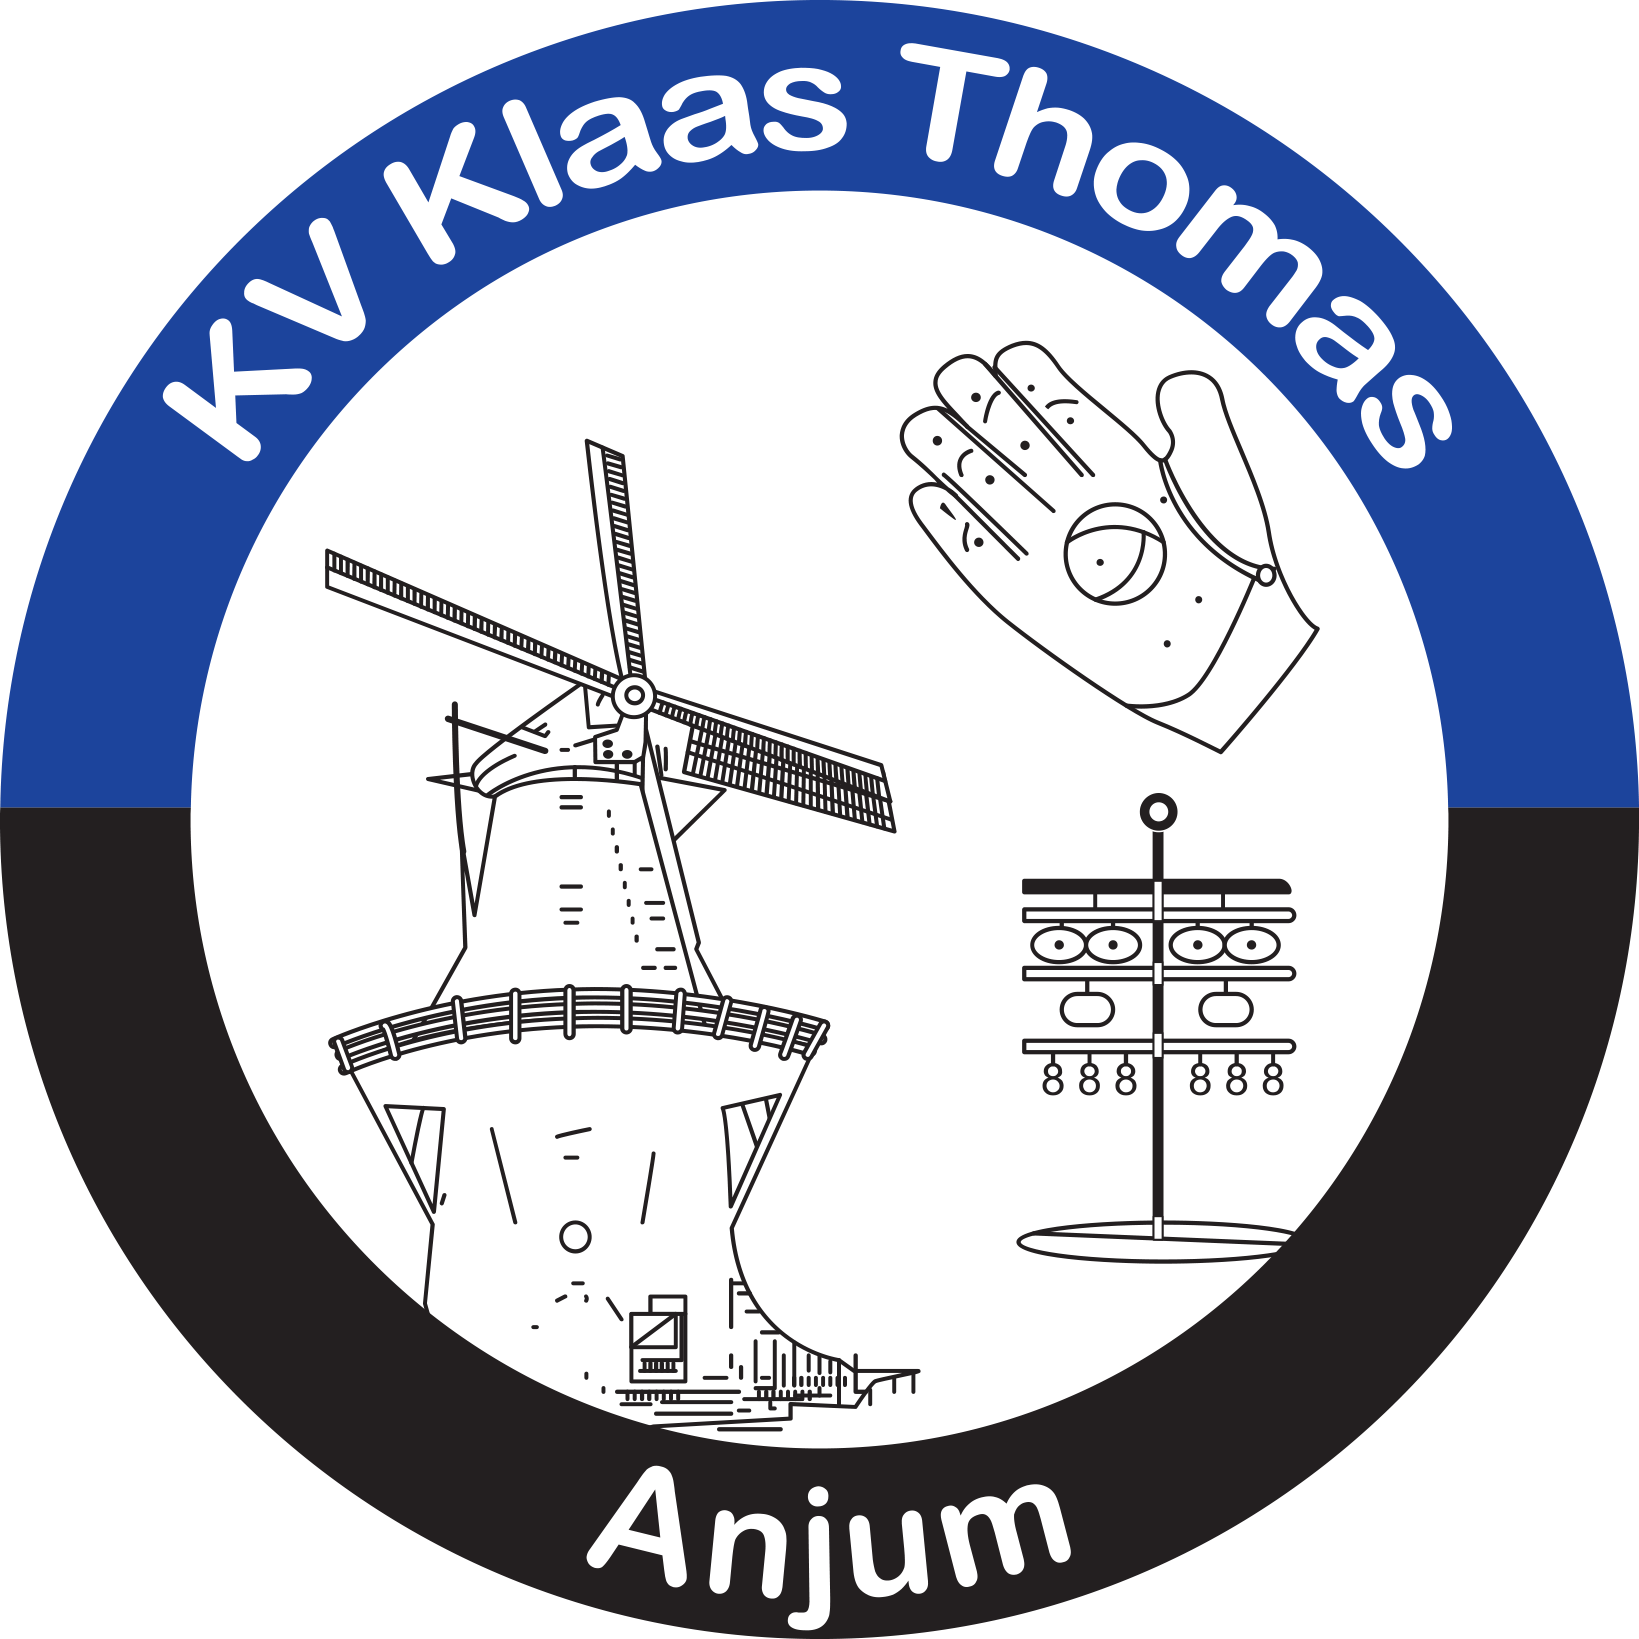 KV Klaas Thomas